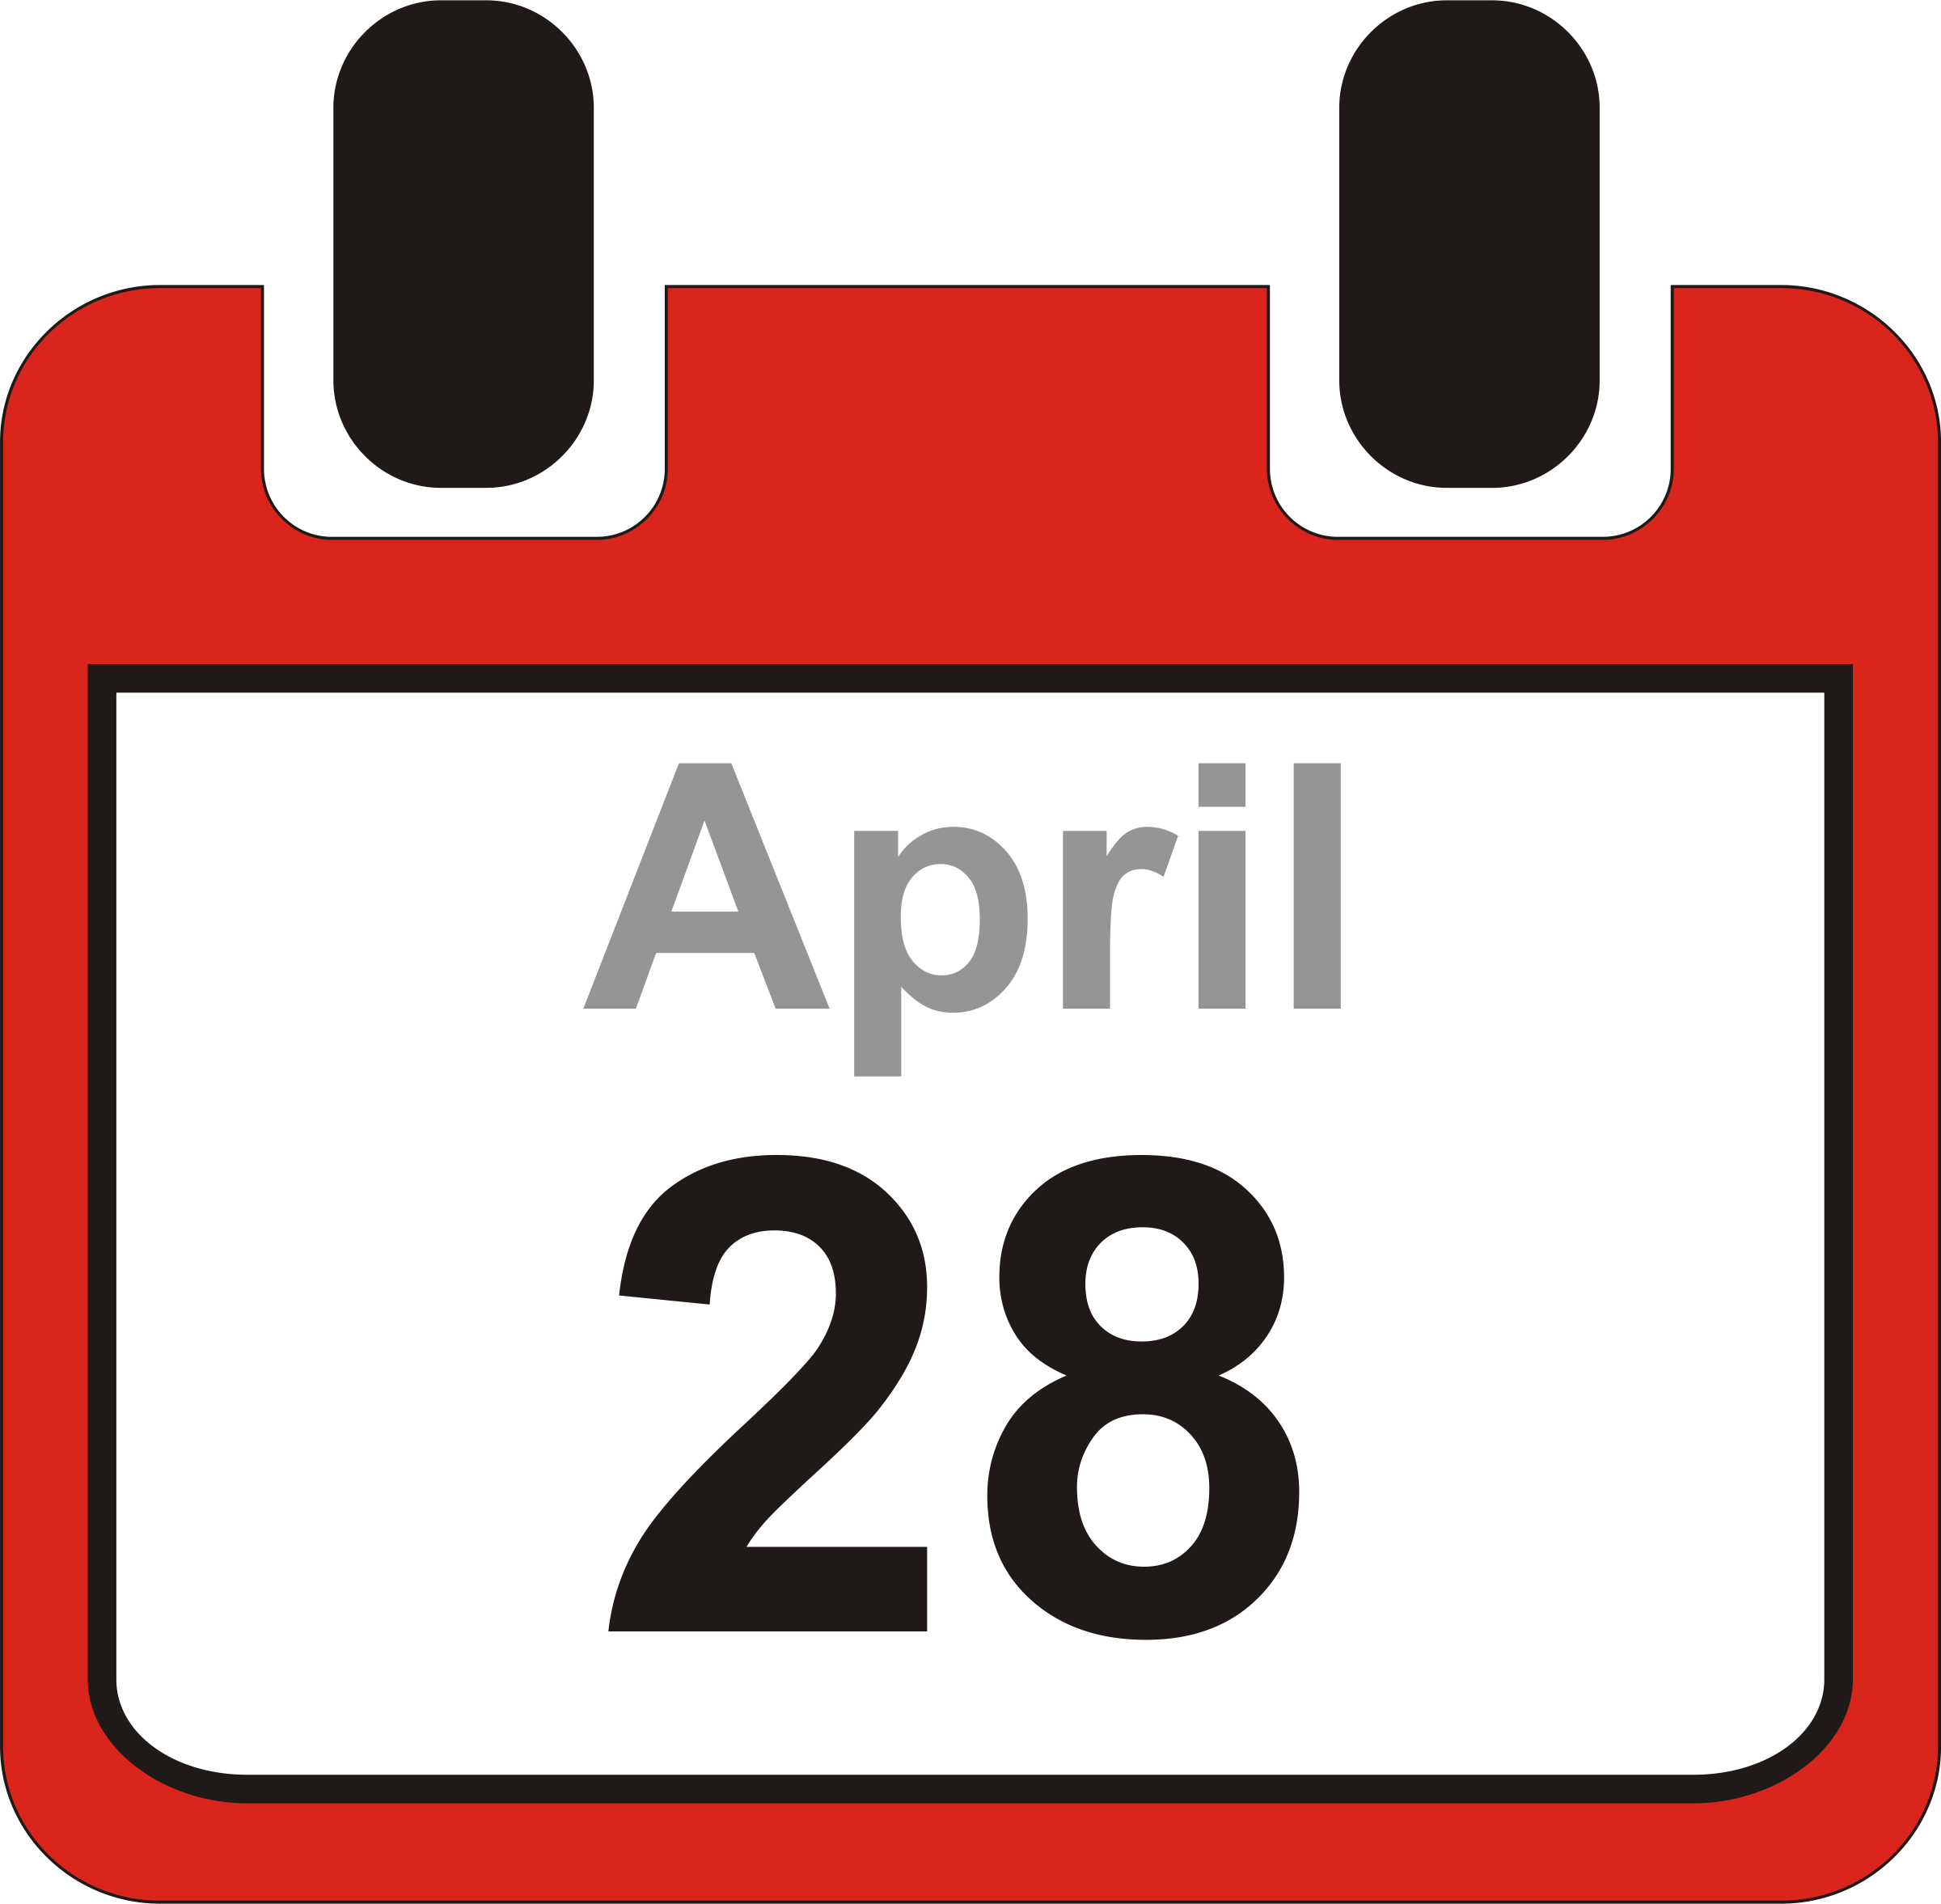 clip art april calendar